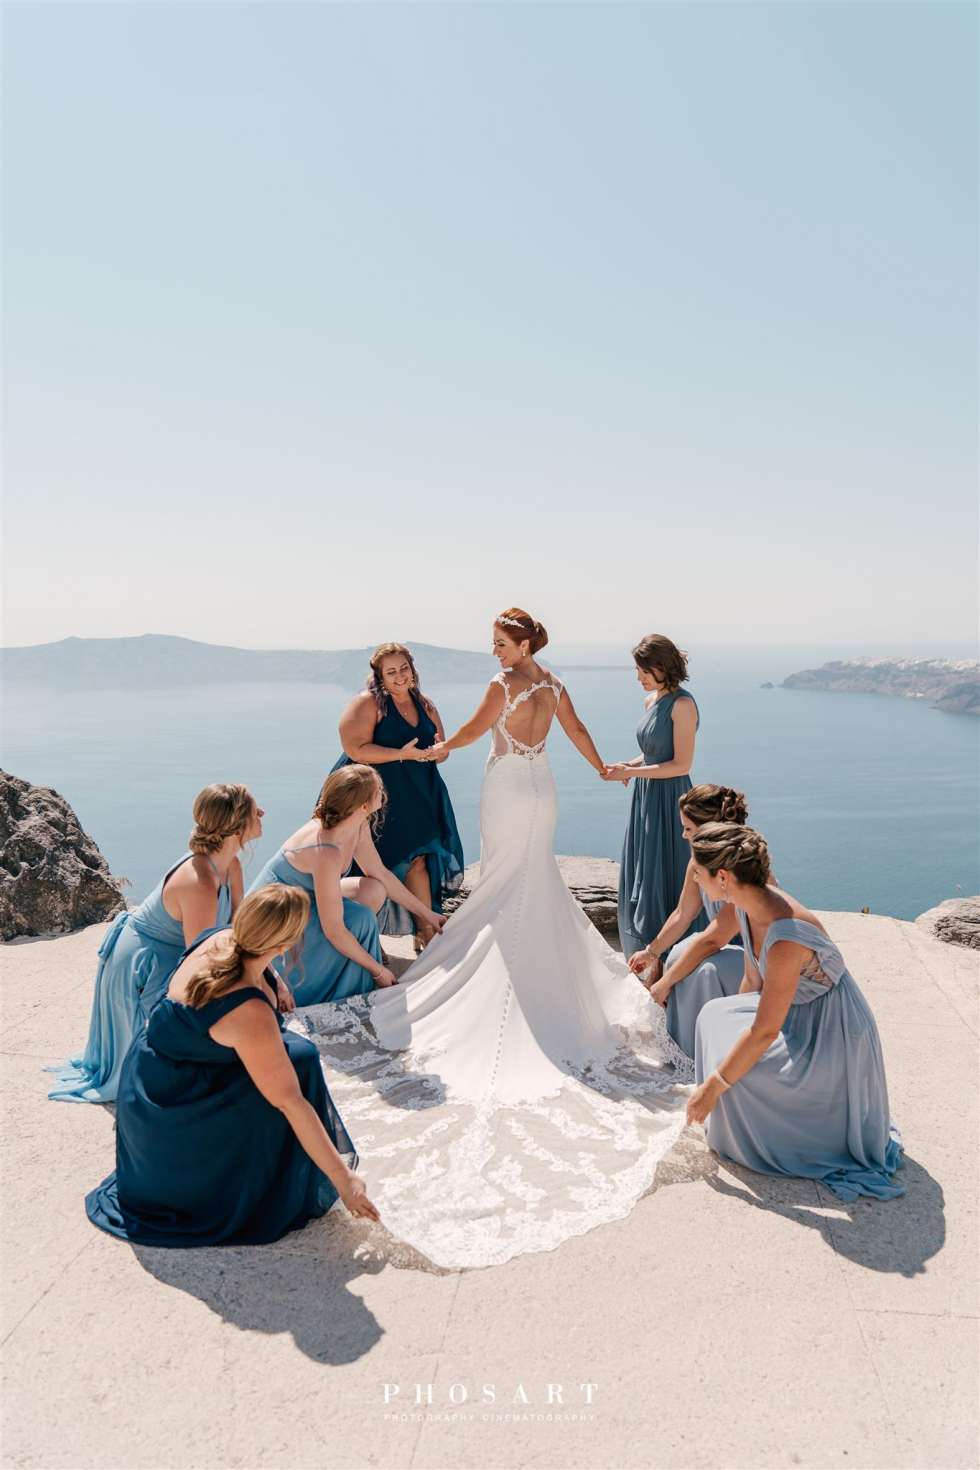 حفل زفاف ساحر في اليونان